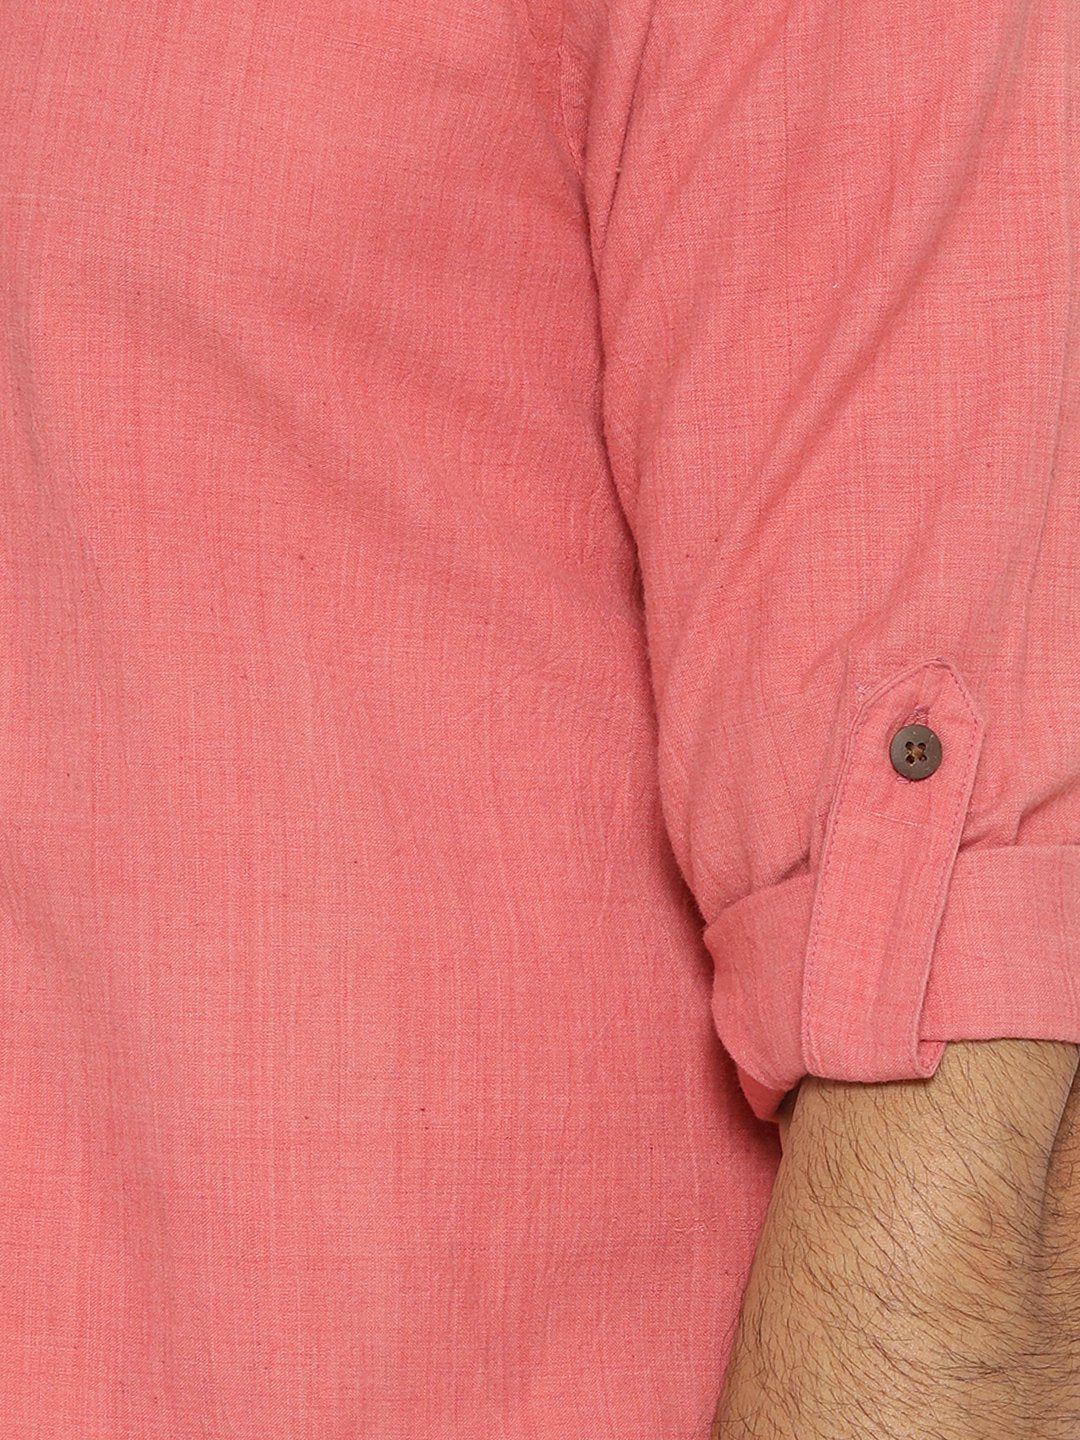 Flamingo pink mandarin collar shirt